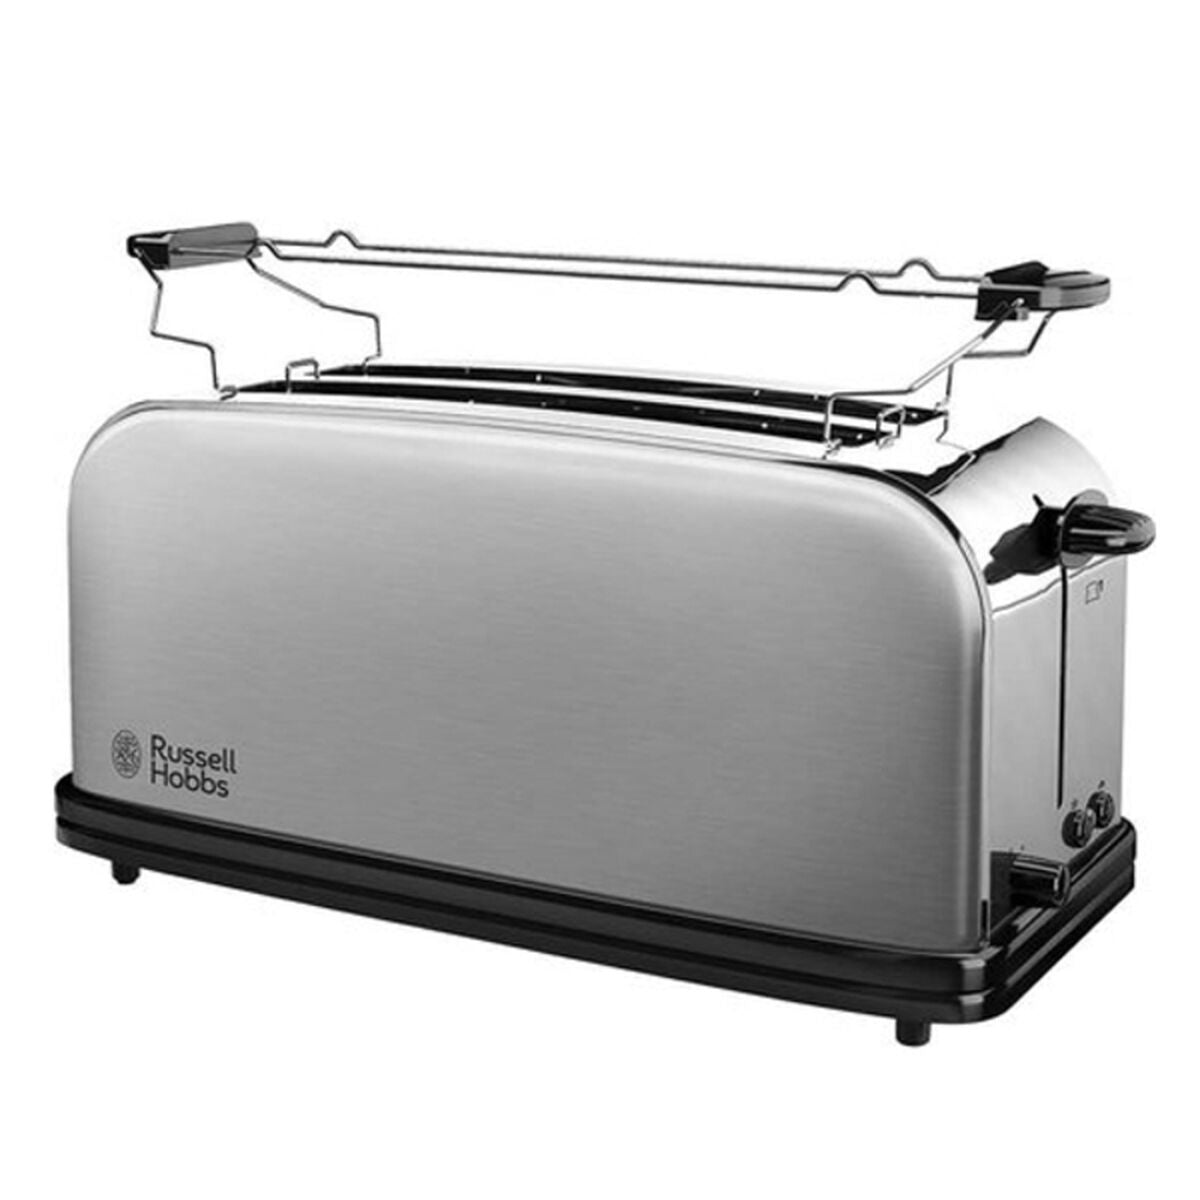 Kaufe Toaster Russell Hobbs 23610-56 Edelstahl 1600 W bei AWK Flagship um € 74.00